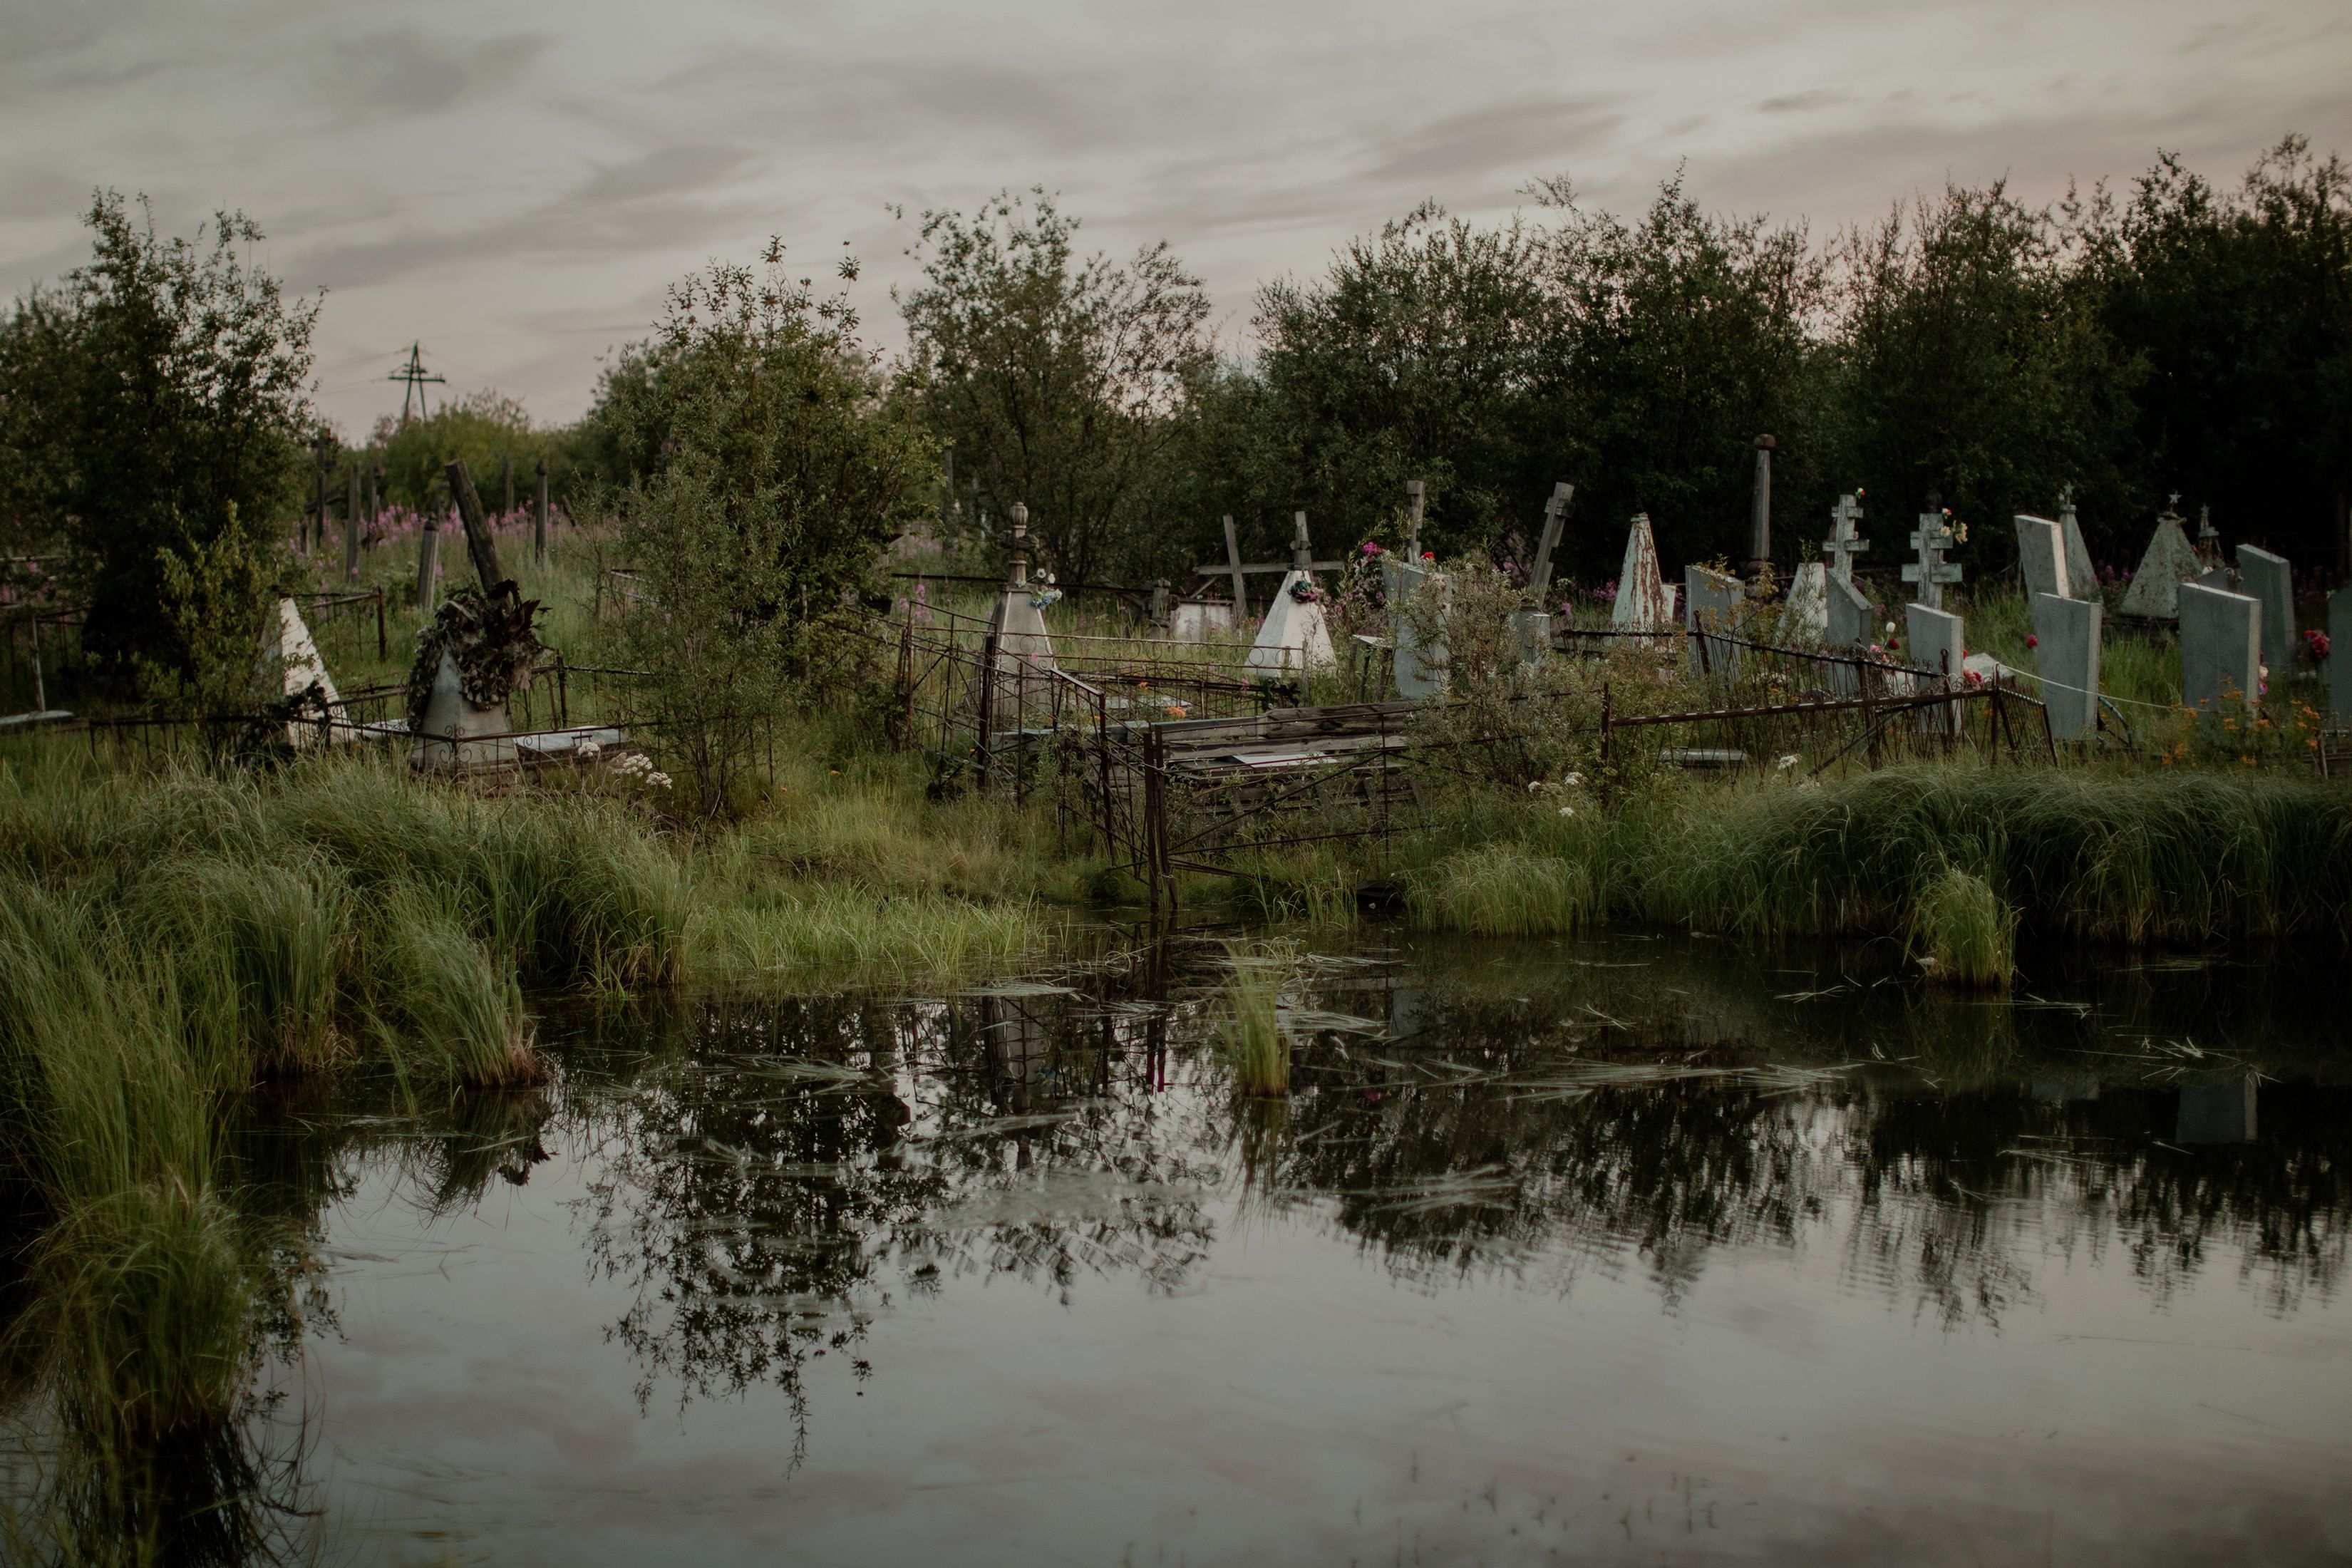 El agua inundó el cementerio en Srednekolimsk y afectó las tumbas. (Emile Ducke/The New York Times)